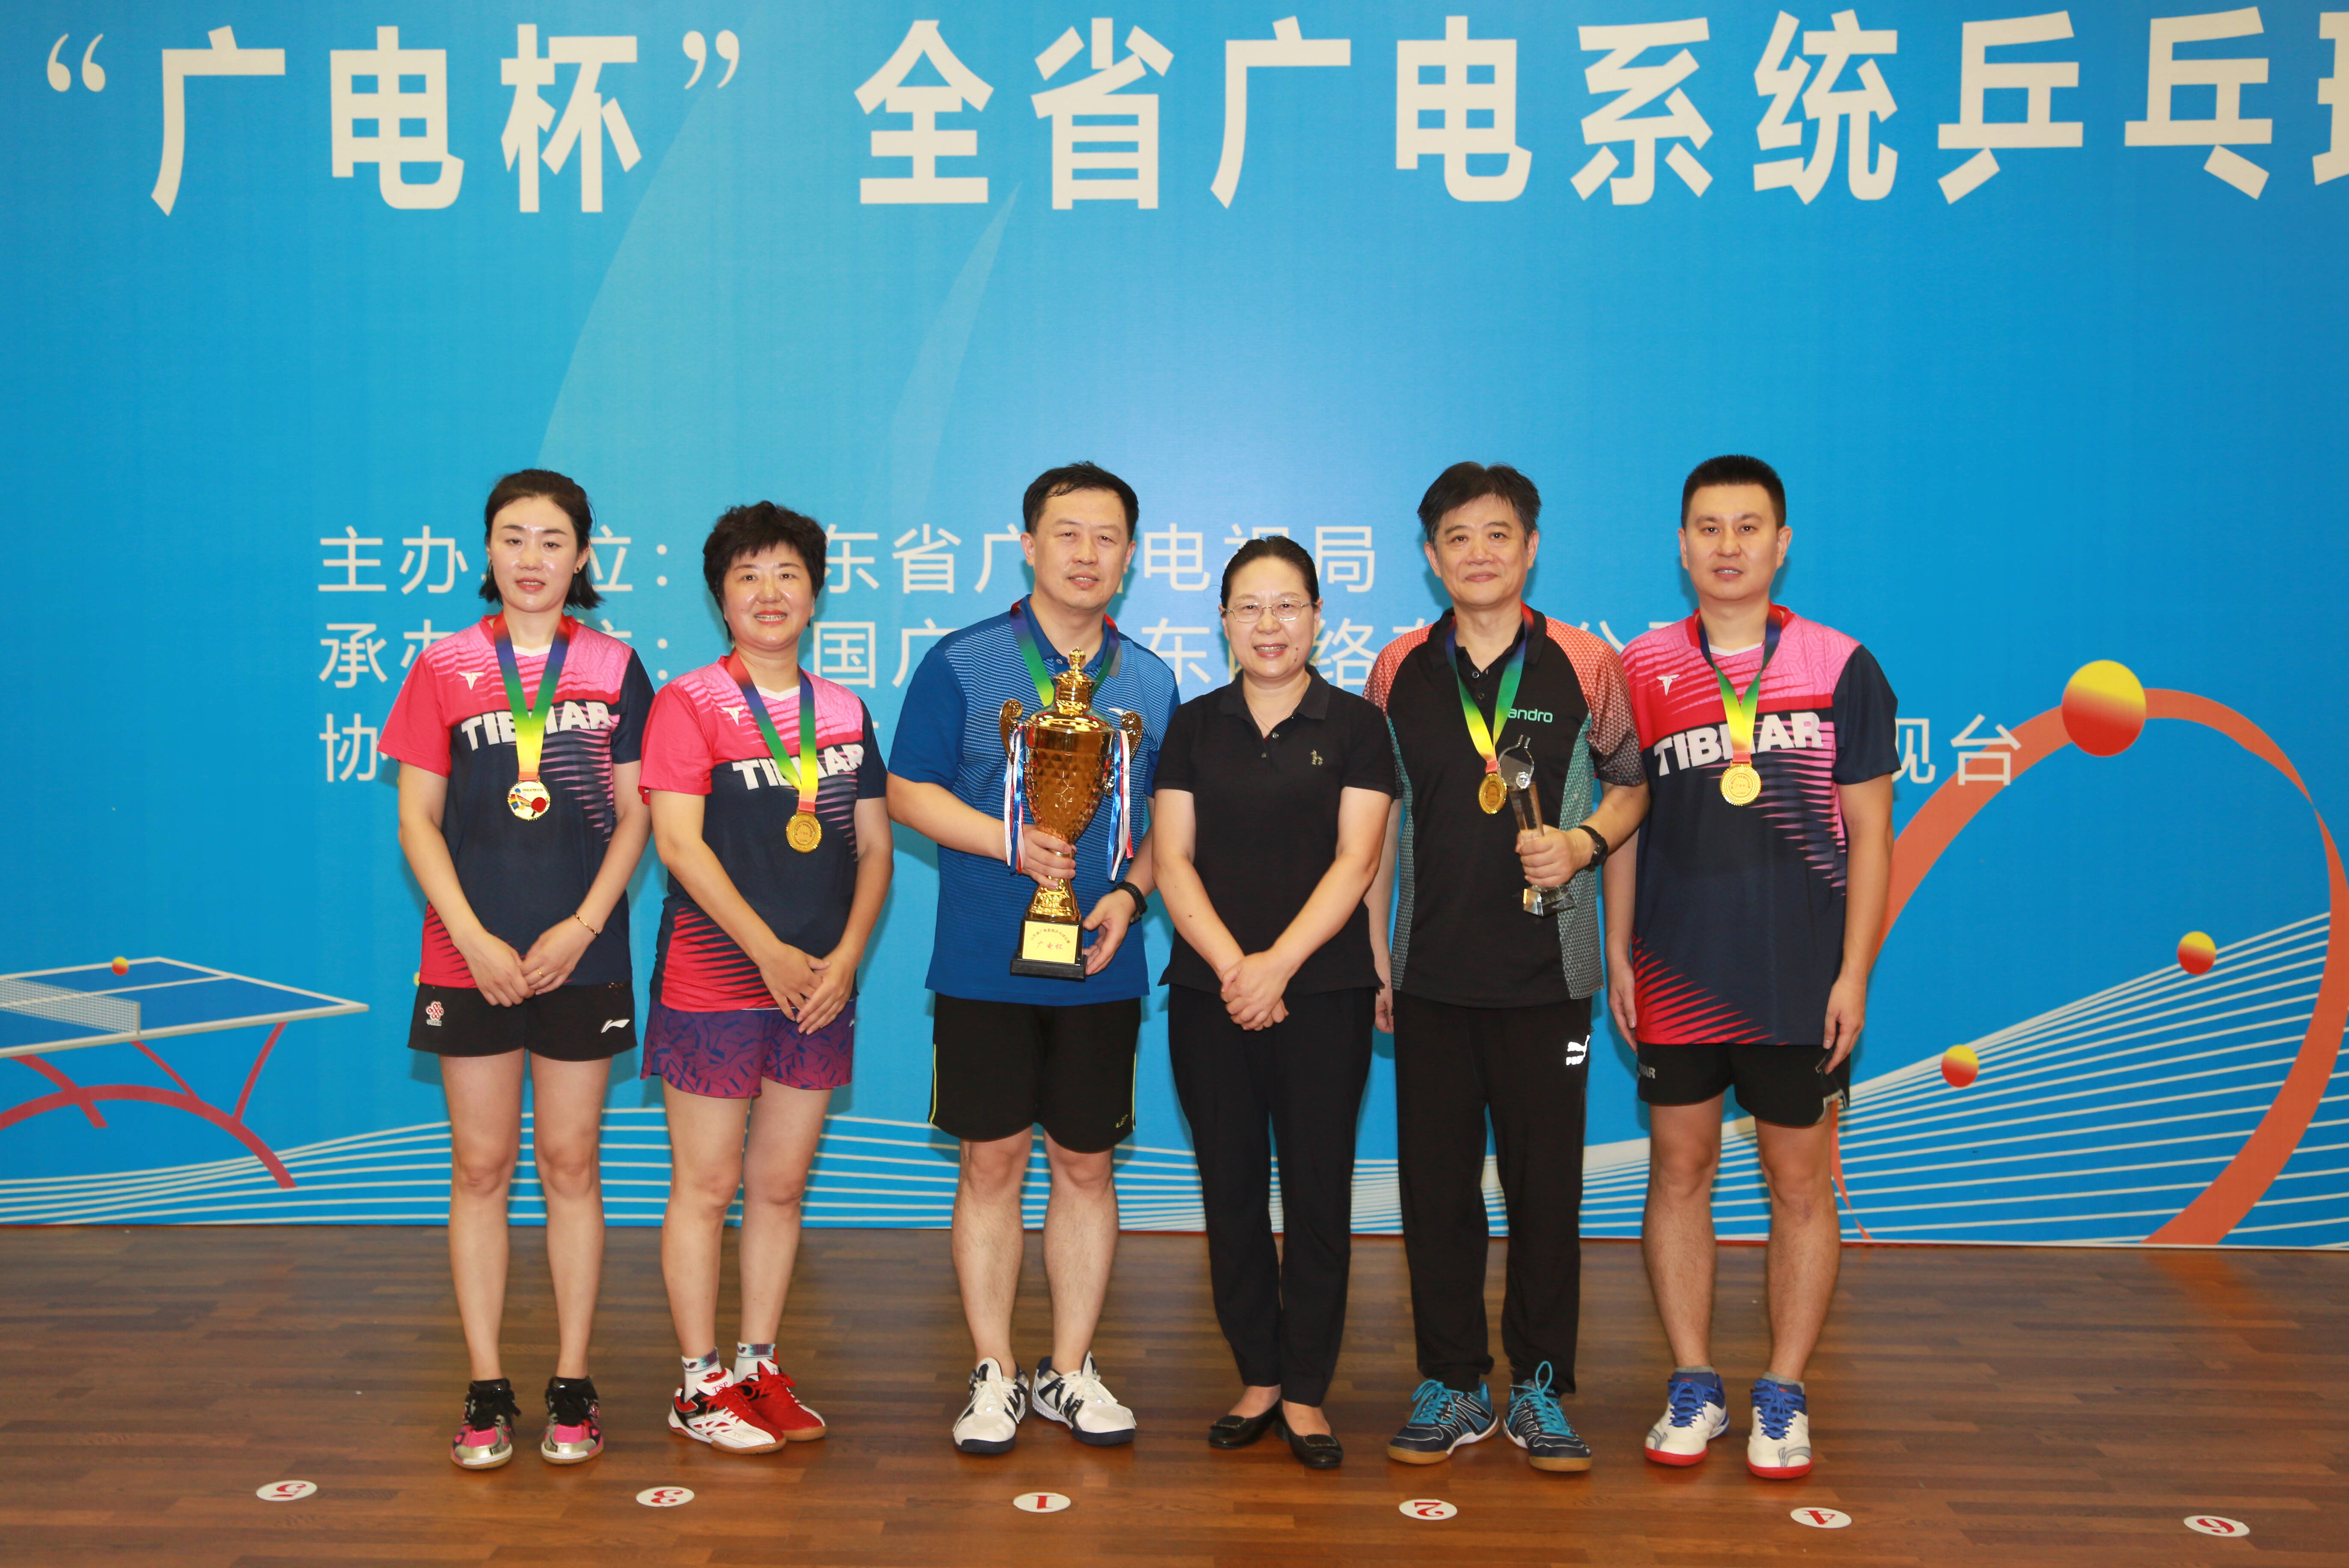 第一届“广电杯”山东省广电系统乒乓球比赛在济南举办